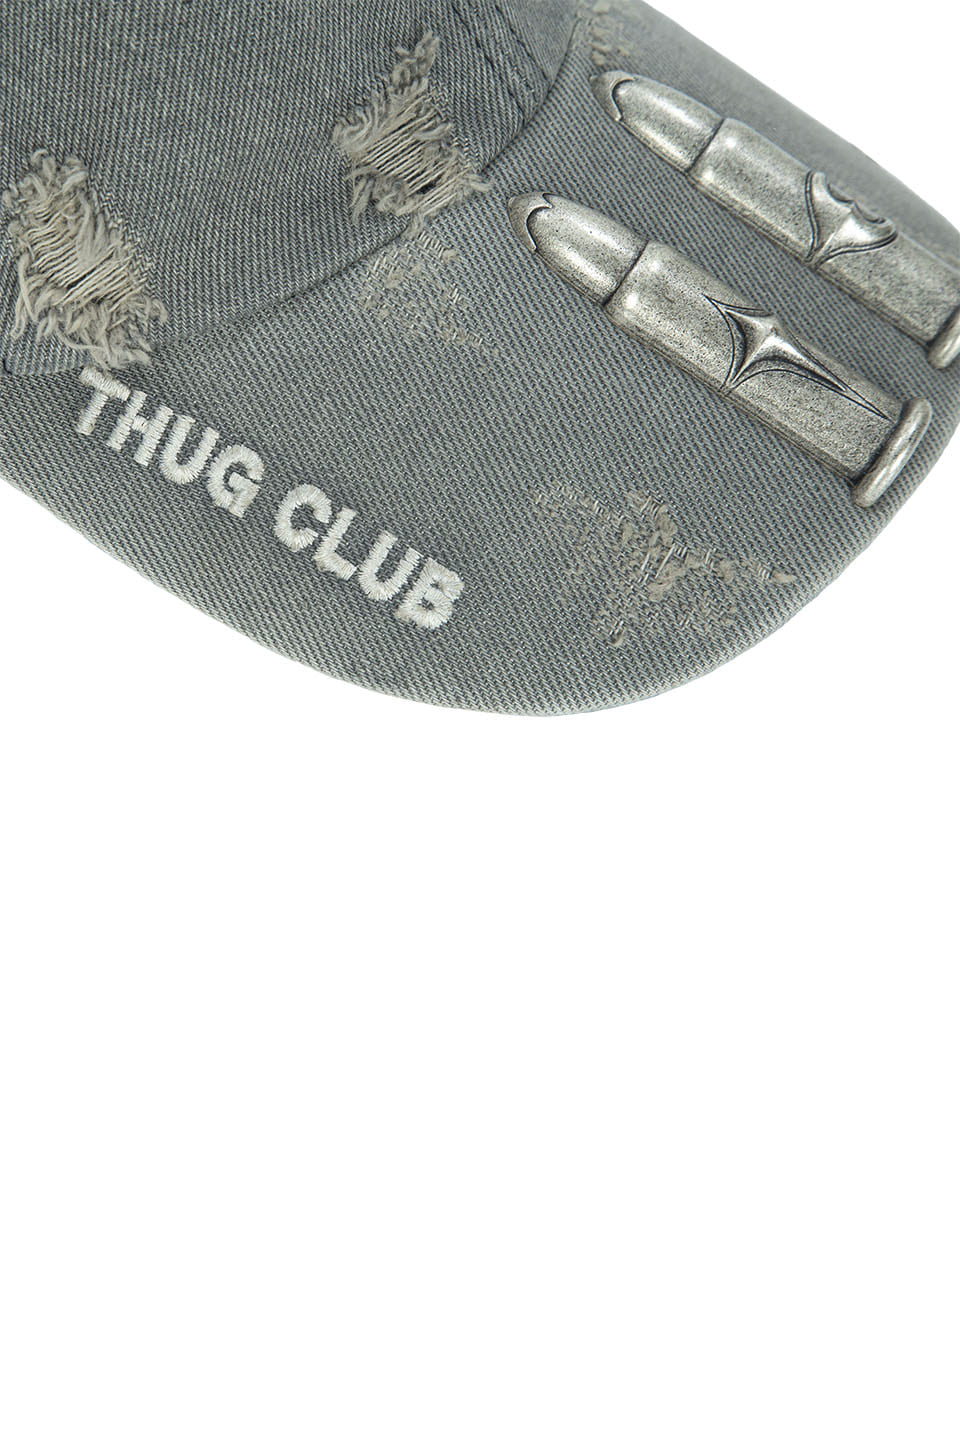 THUG CLUB TC LIFE CAP / BLK今の所厳しいです申し訳ないです